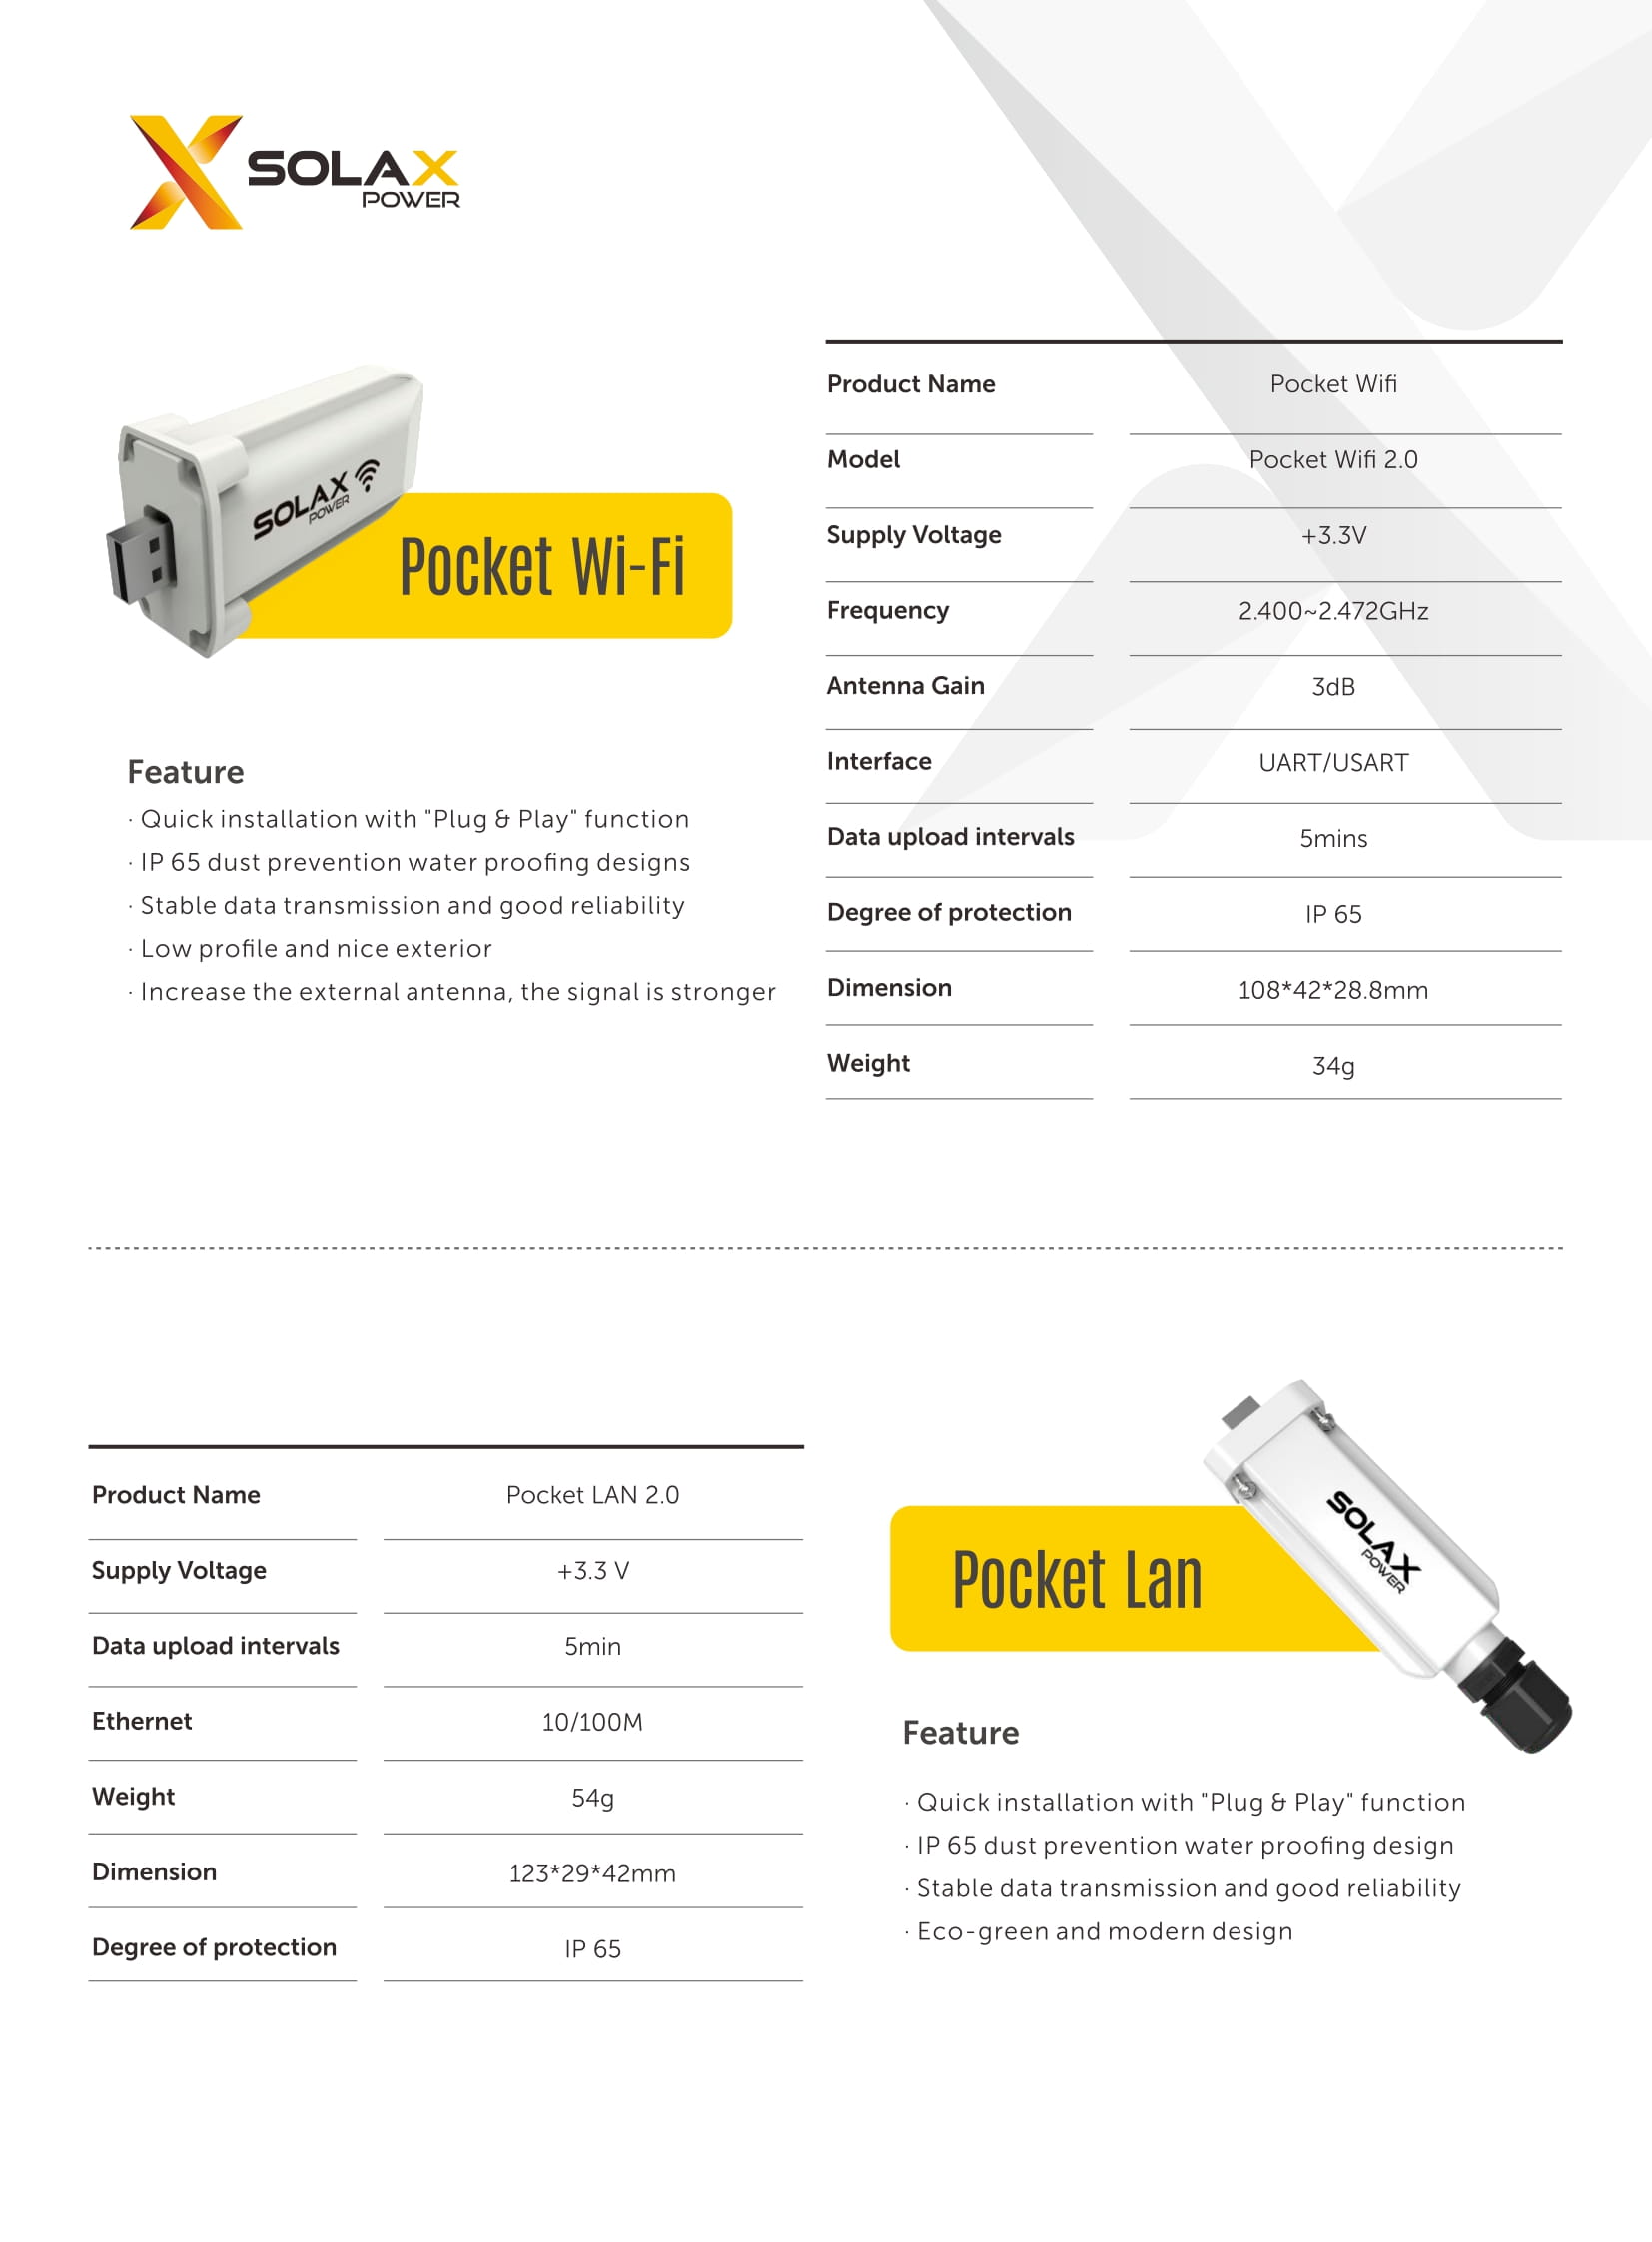 SolaX Power Pocket Wifi 2.0